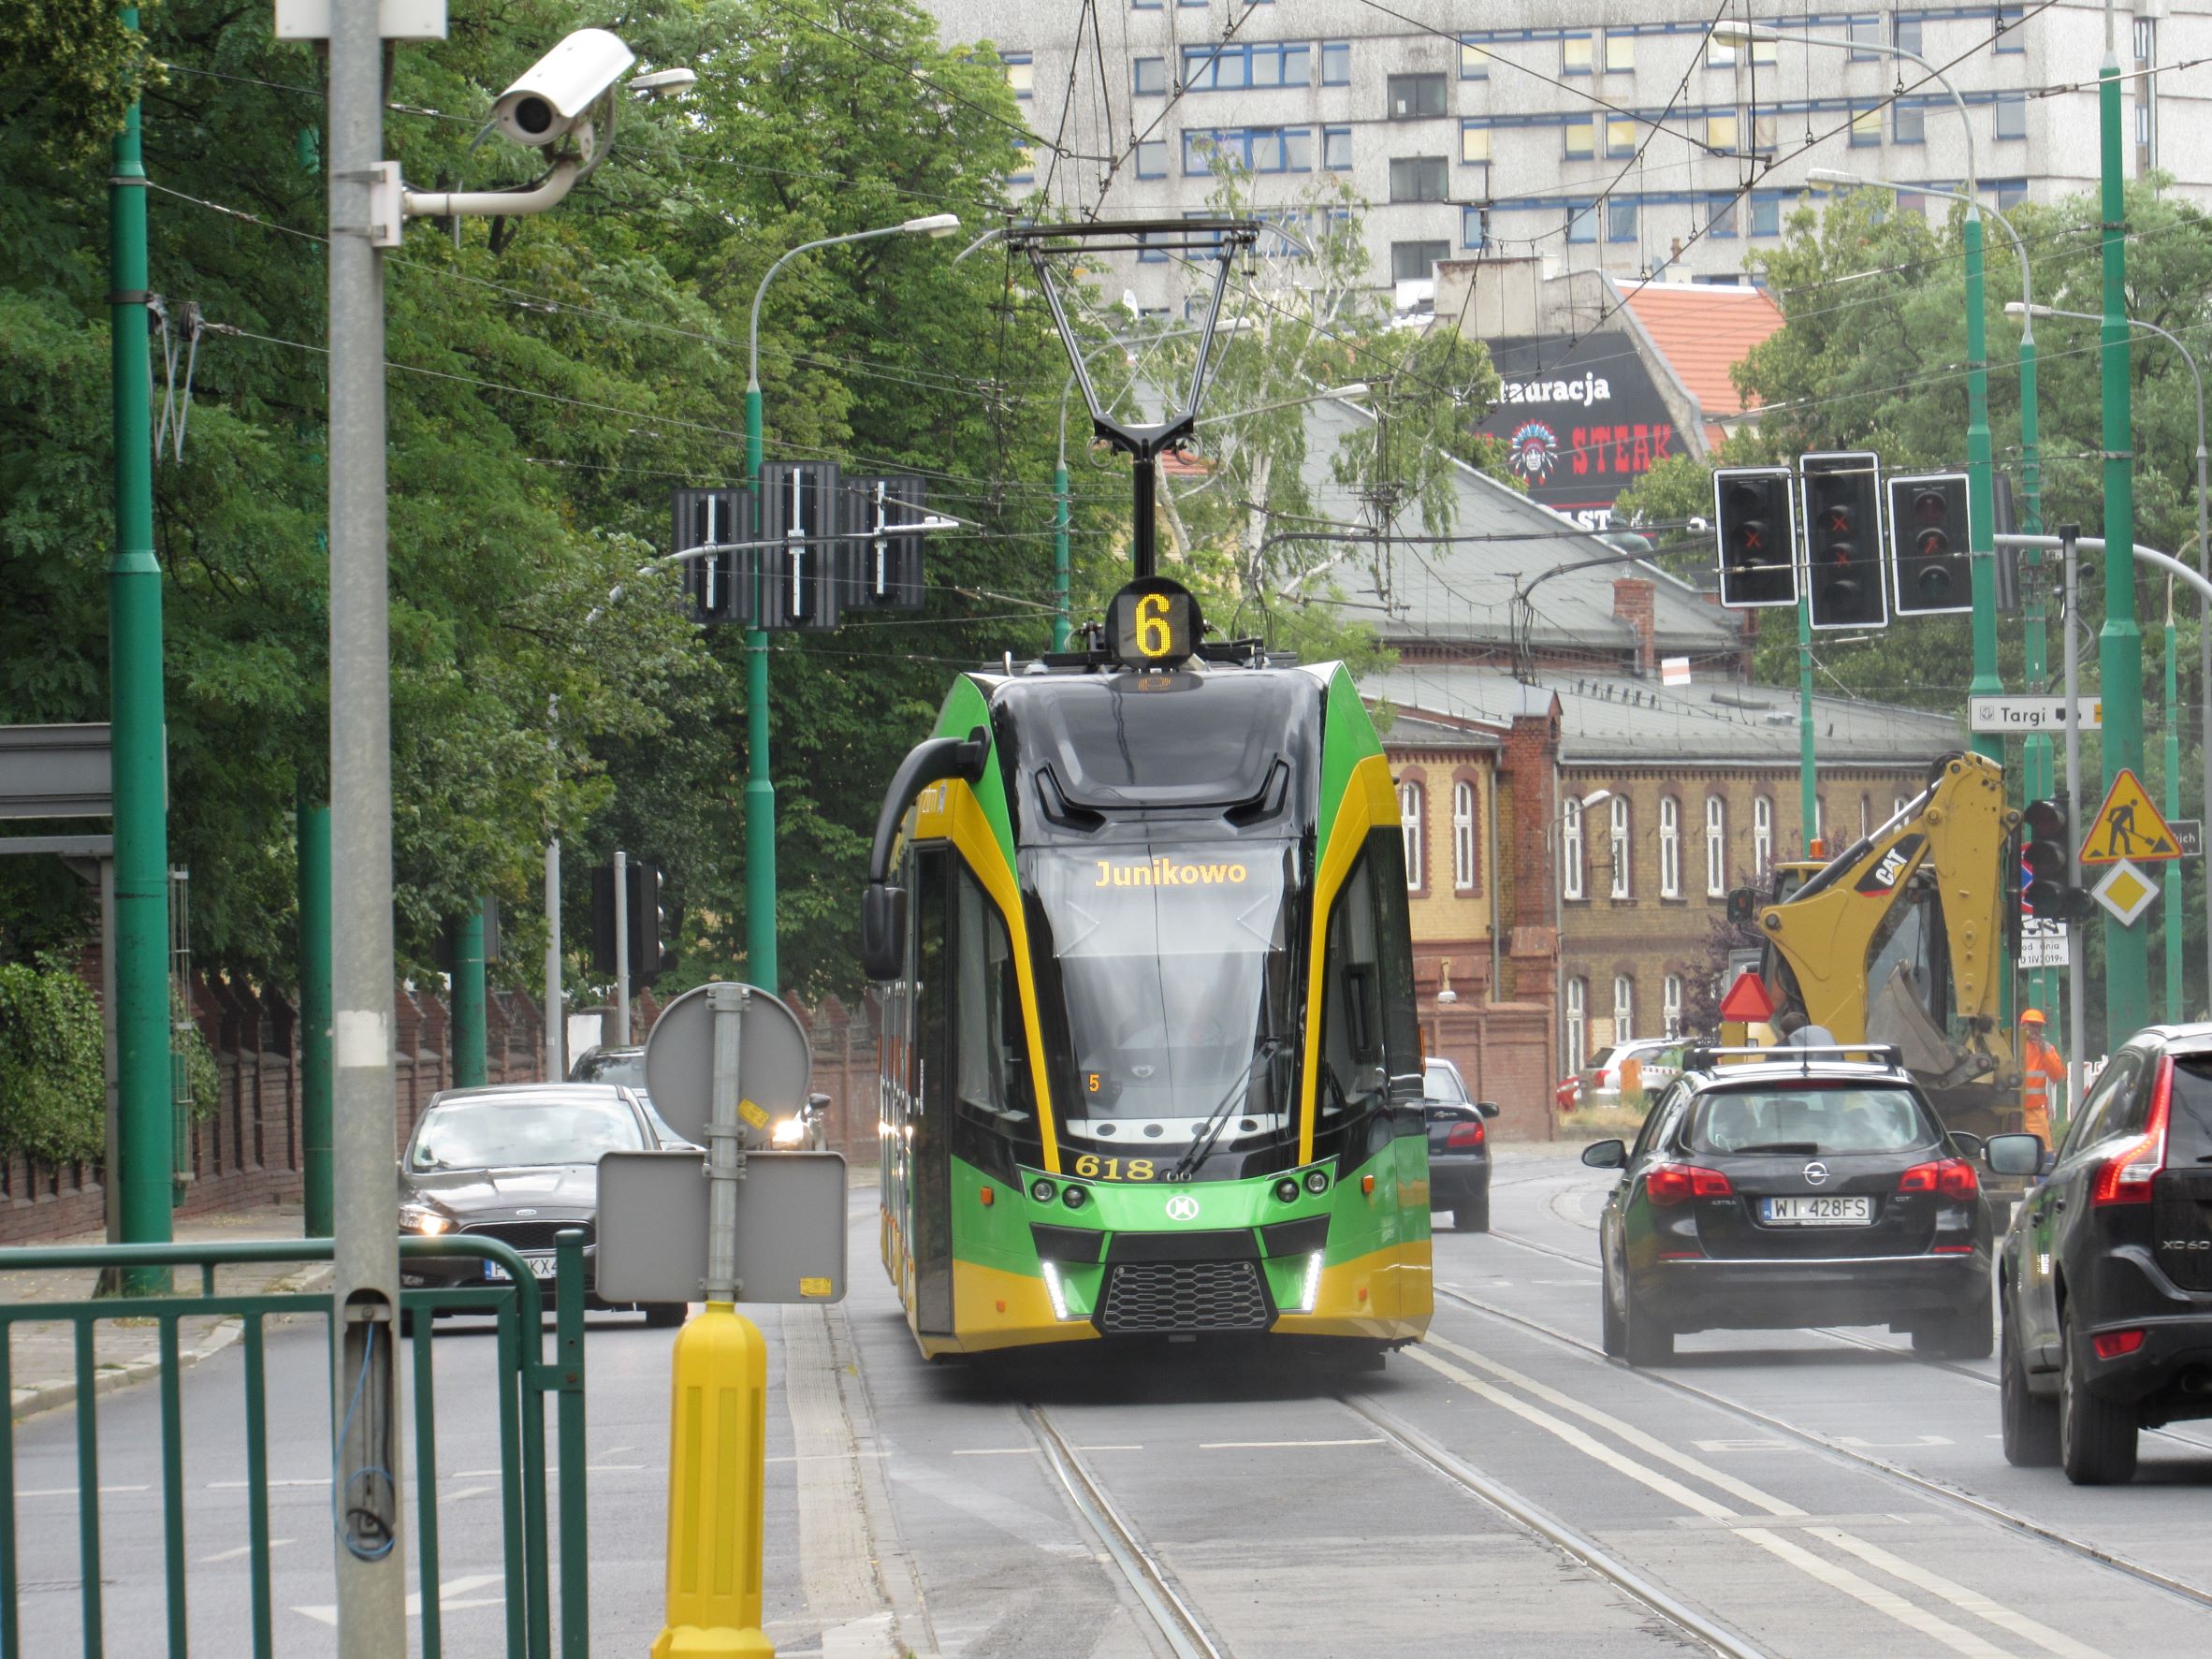 W październiku zmiana układu linii tramwajowych w celu poprawy warunków komunikacyjnych w centrum miasta